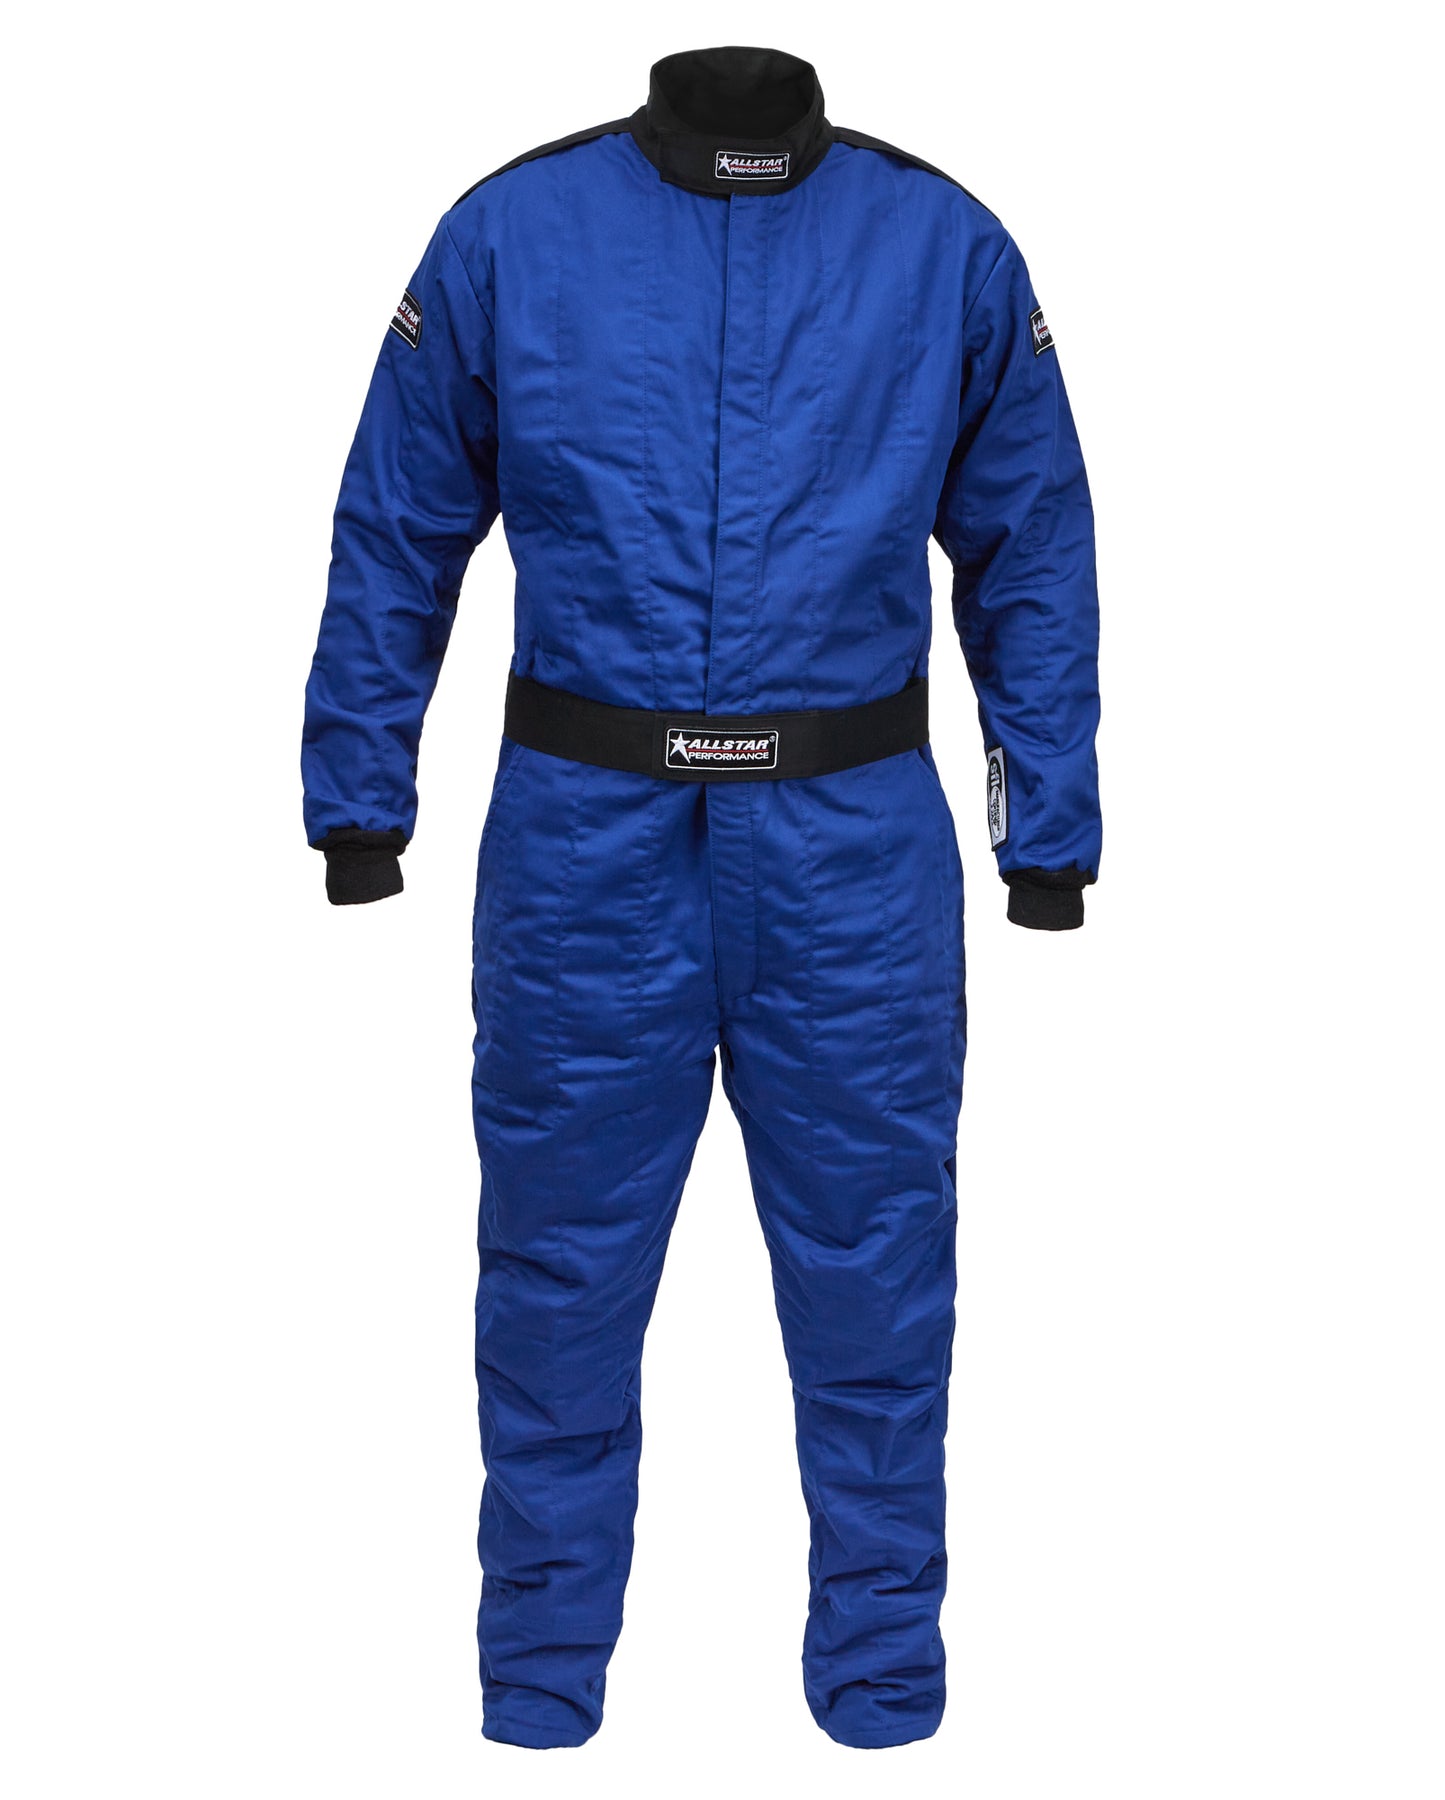 Racing Suit SFI 3.2A/5 M/L Blue Large